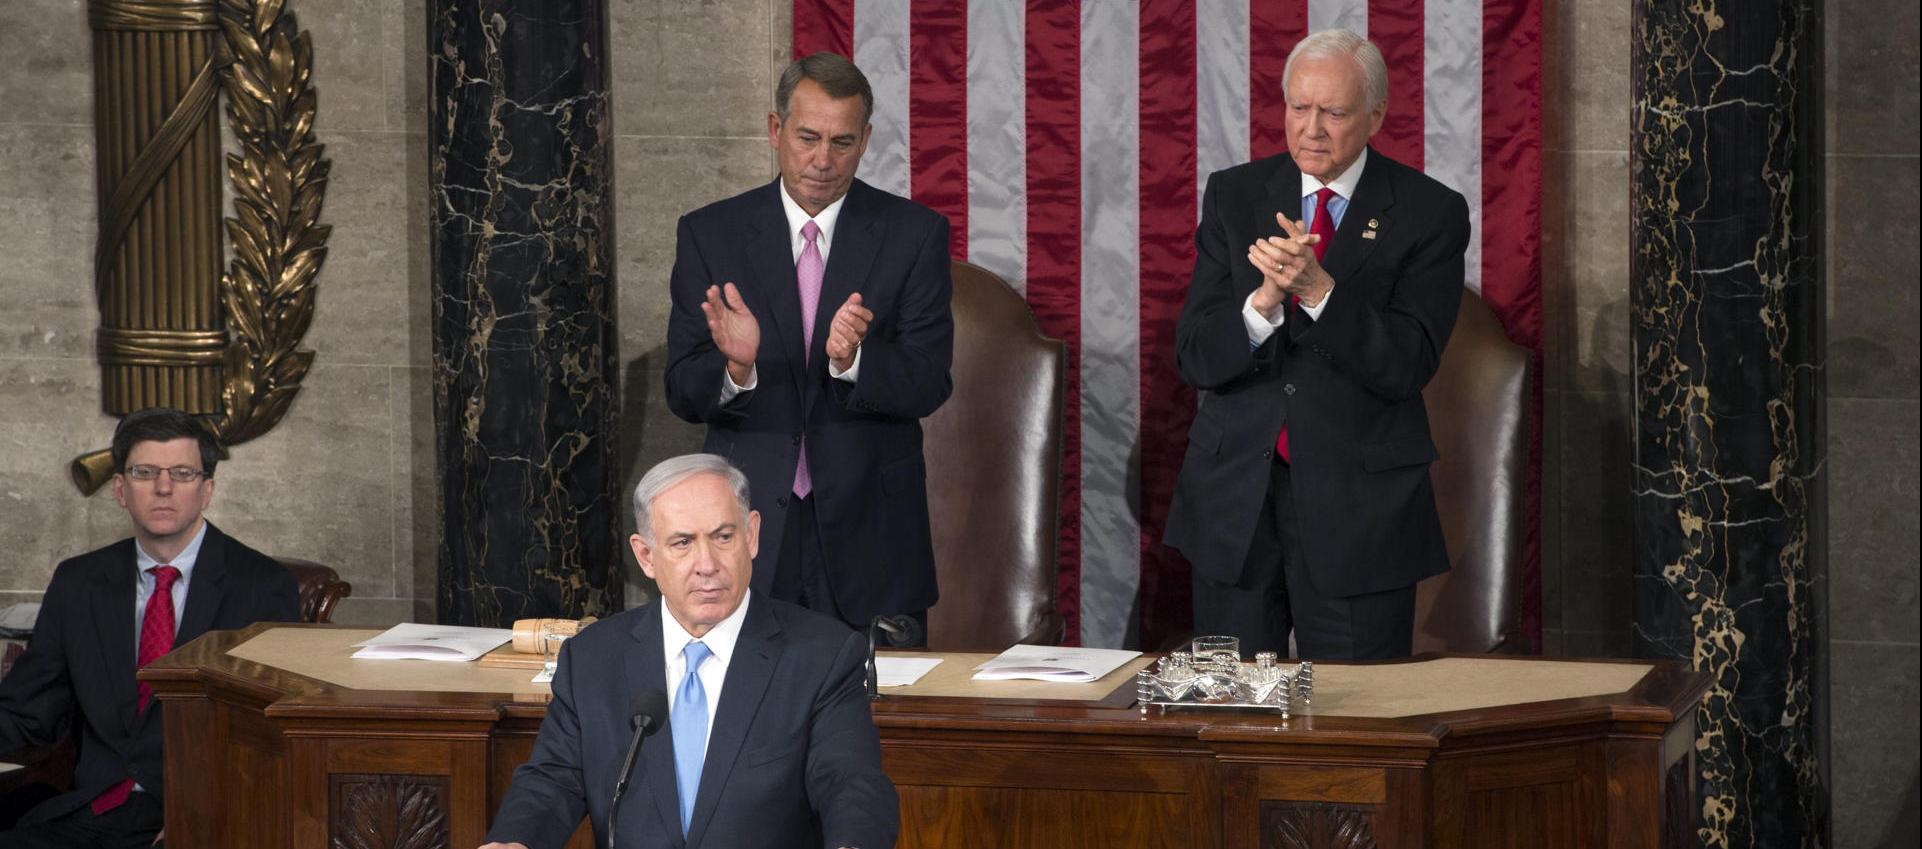 Foto de archivo del primer ministro israelí, Benjamin Netanyahu (frente), durante un discurso en el Congreso de EE.UU